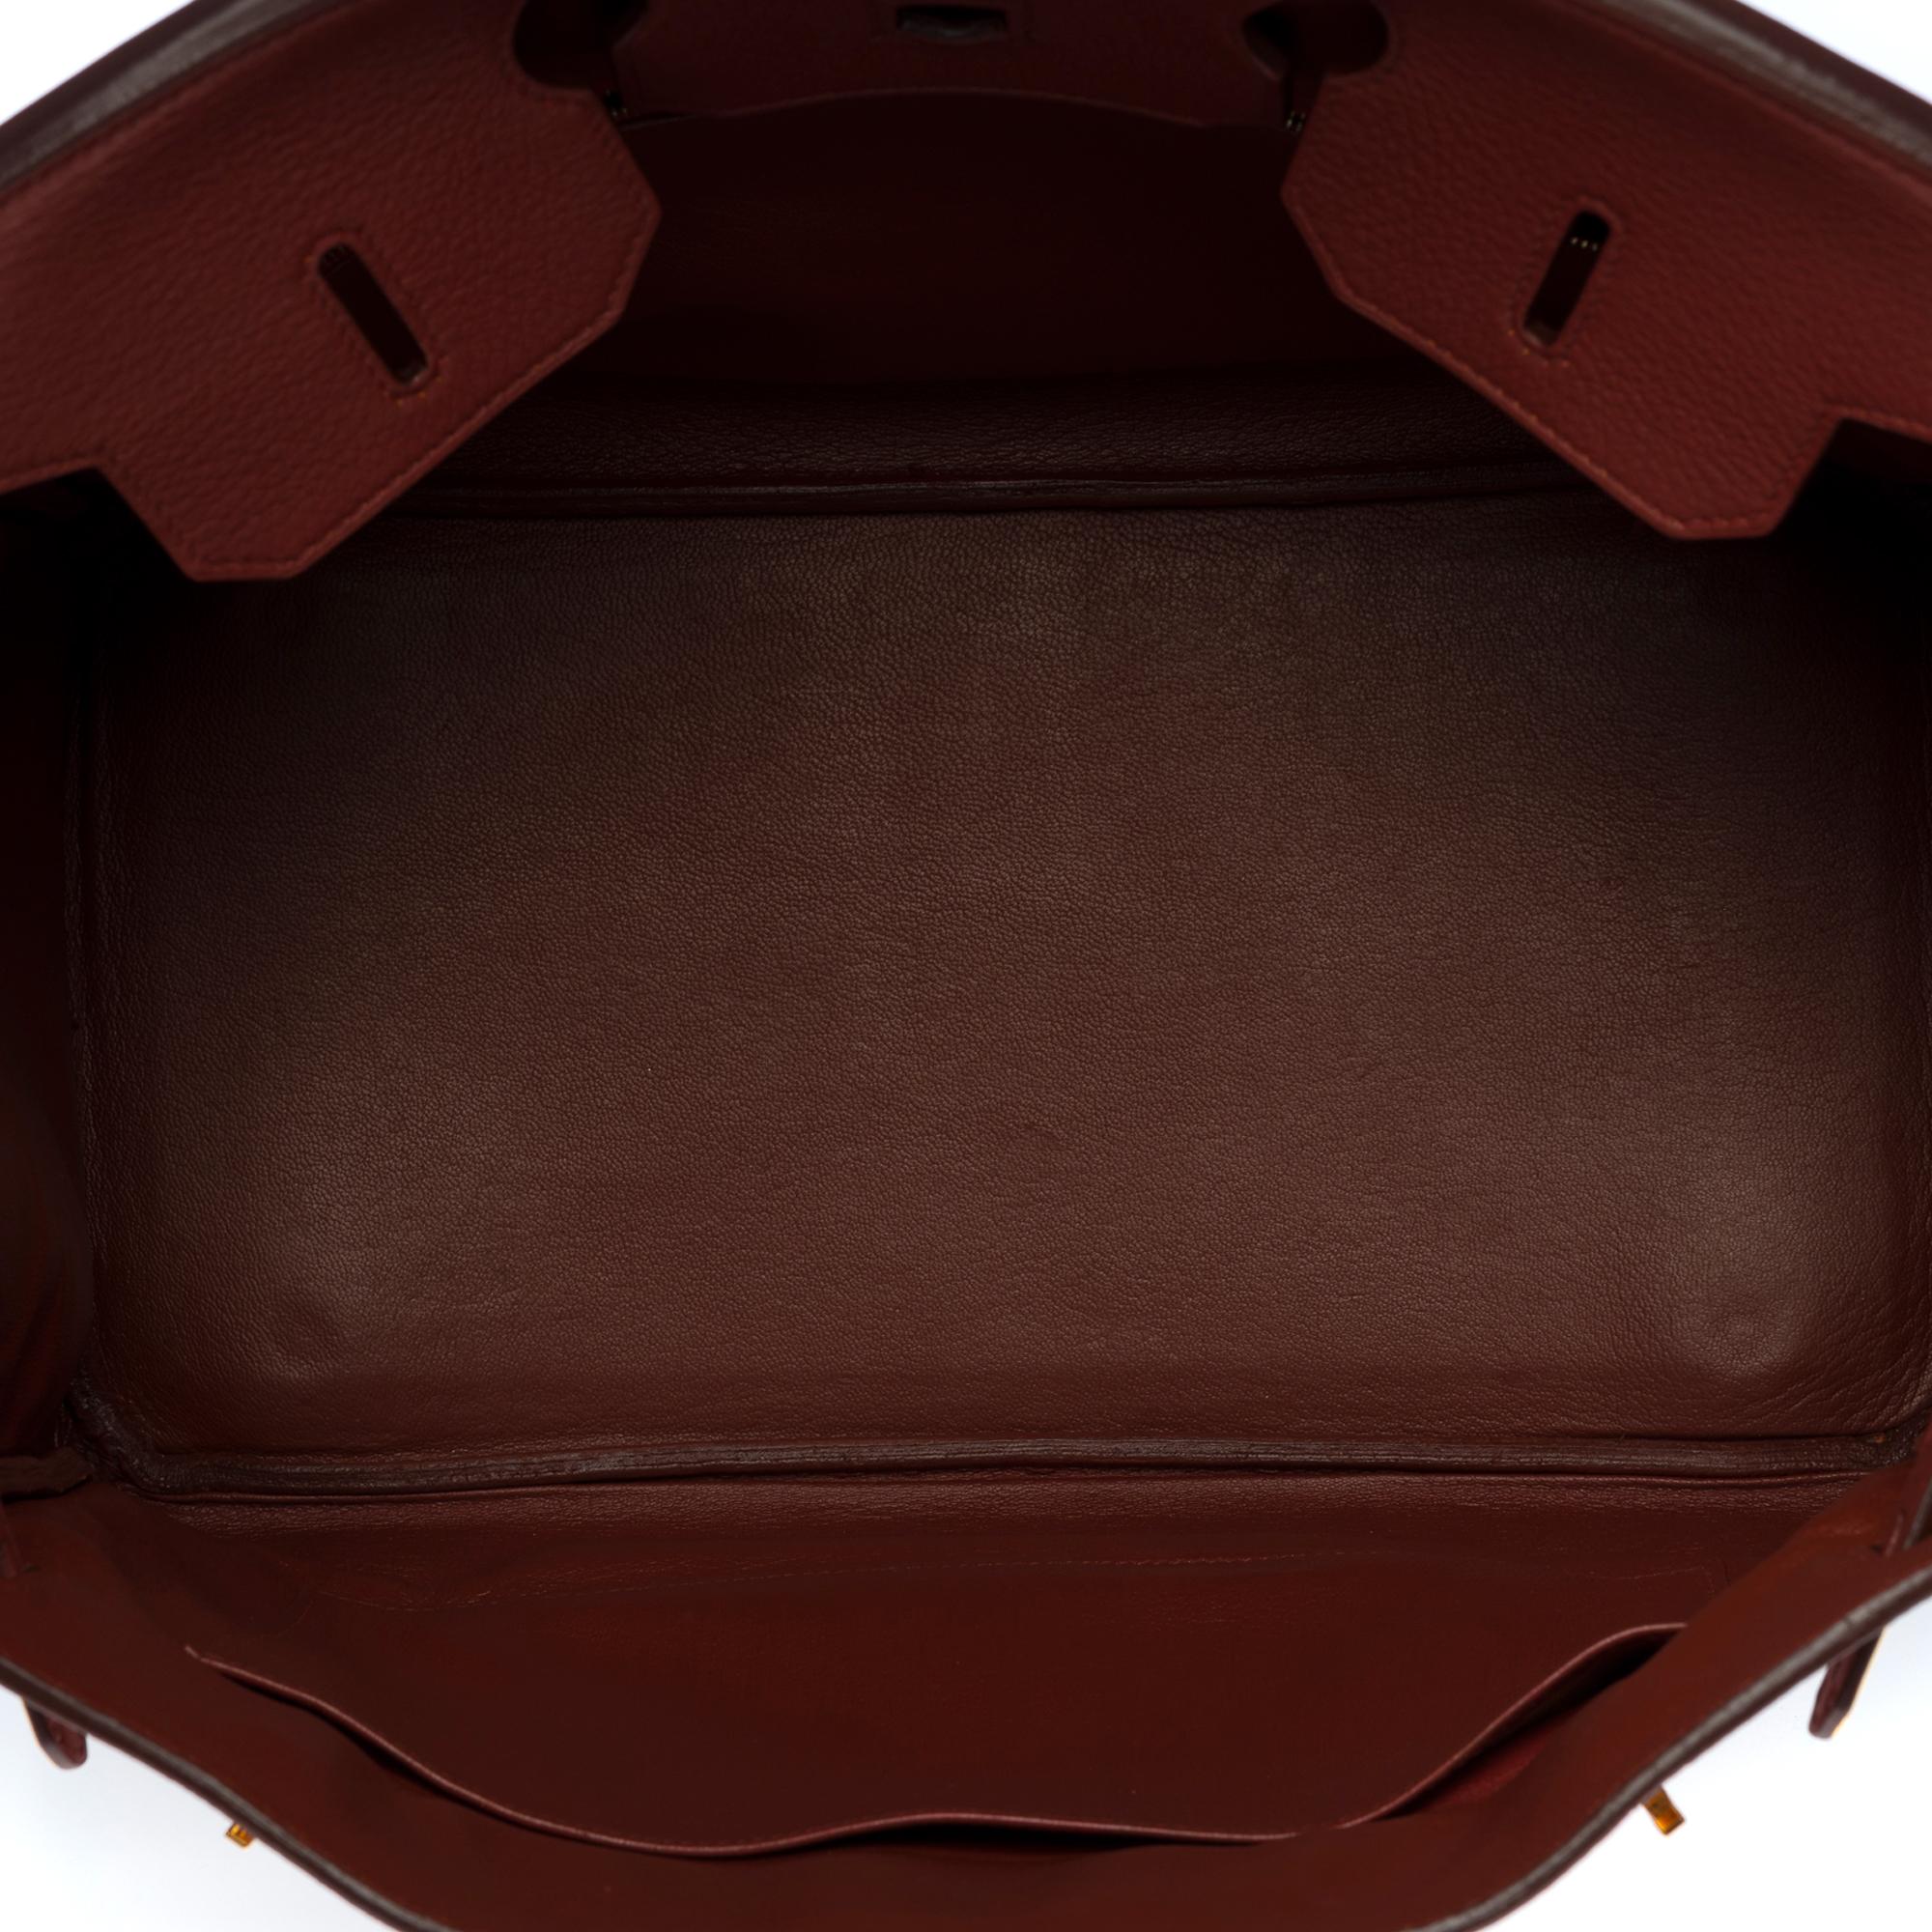 Women's or Men's Amazing Hermès Birkin 35 handbag in Cognac Togo leather, GHW